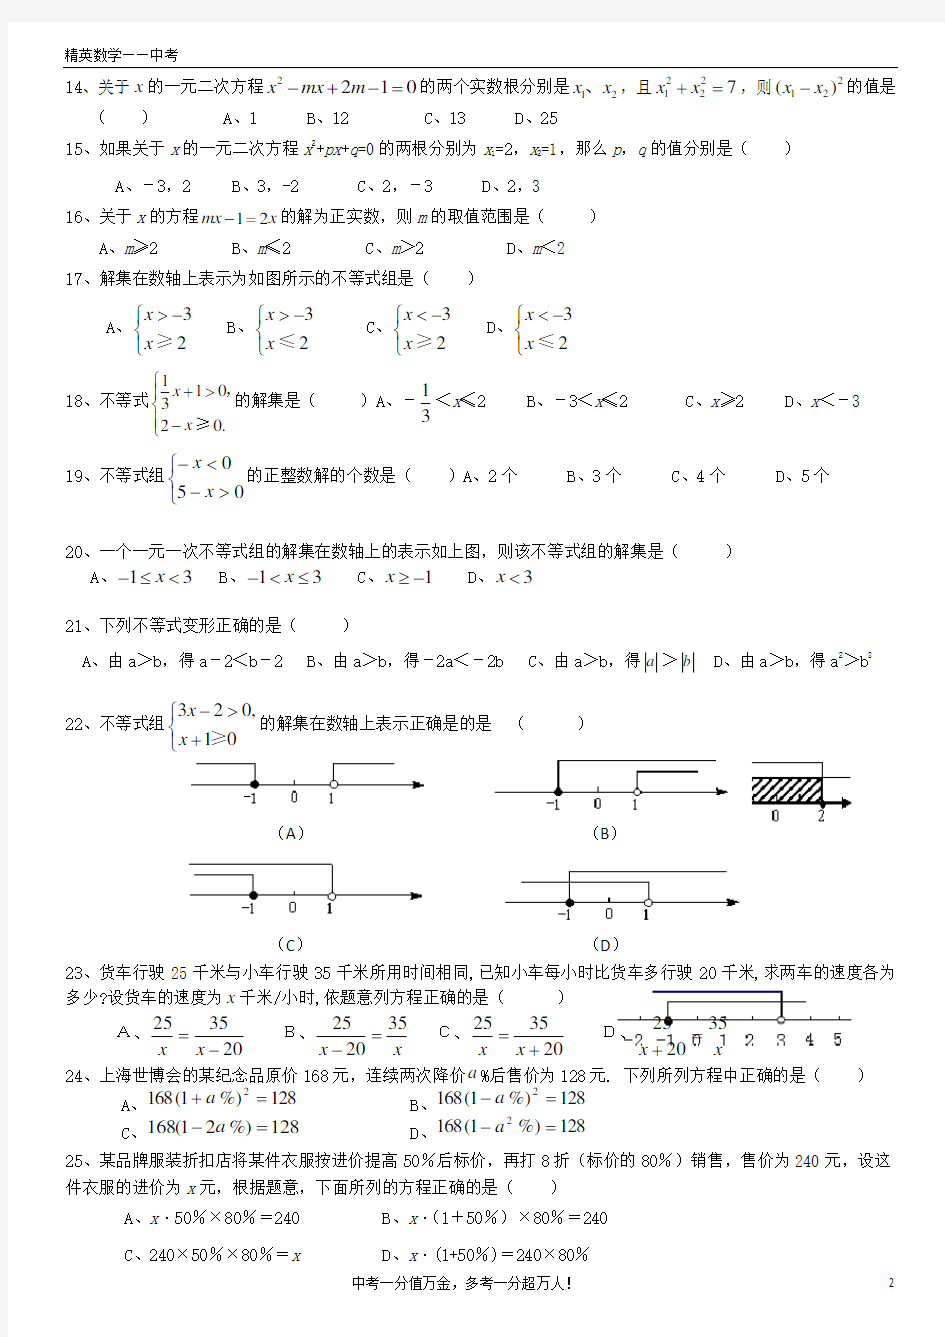 (完整版)方程与不等式测试题